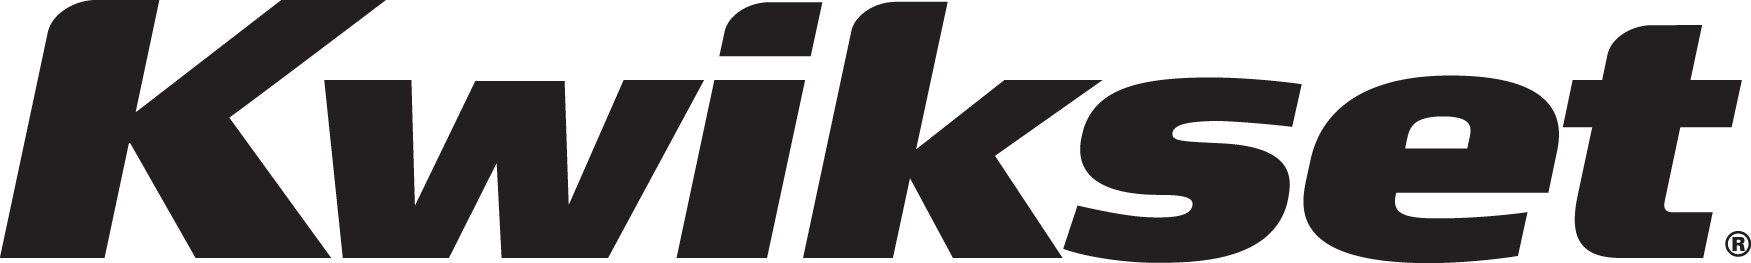 Kwikset vendor logo